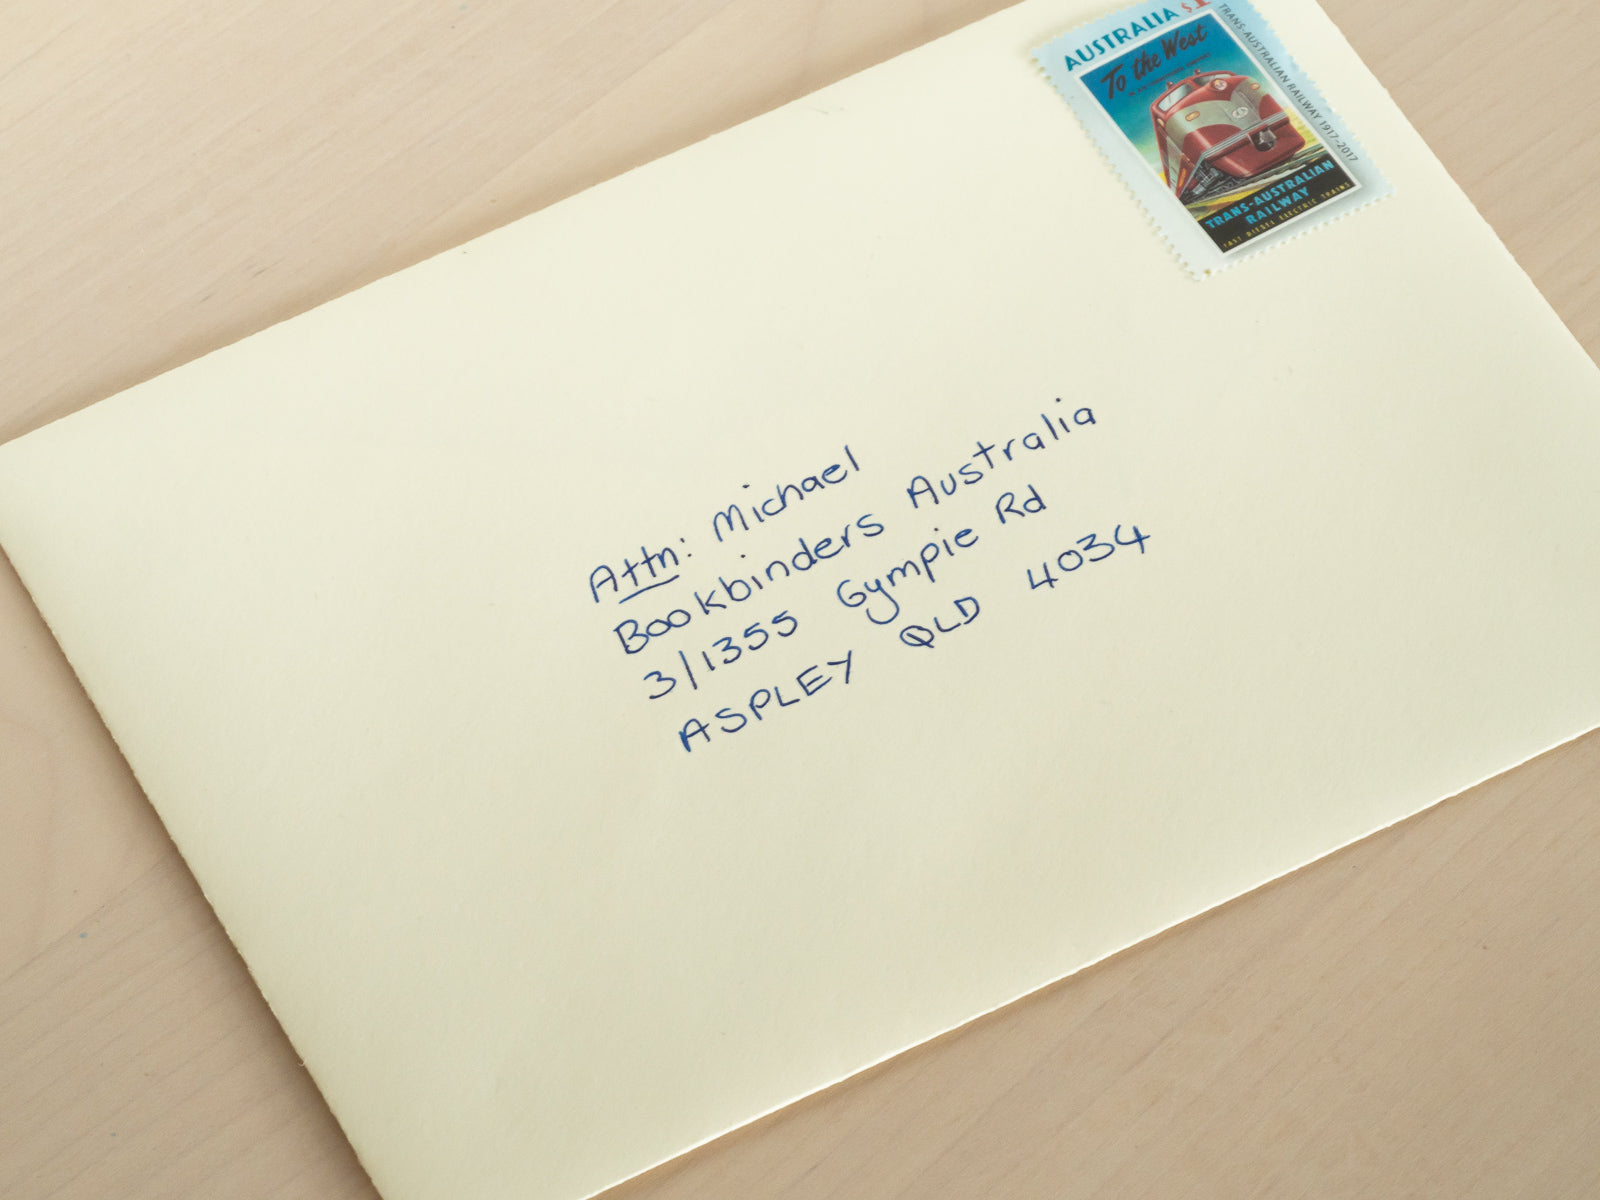 sending address on envelope